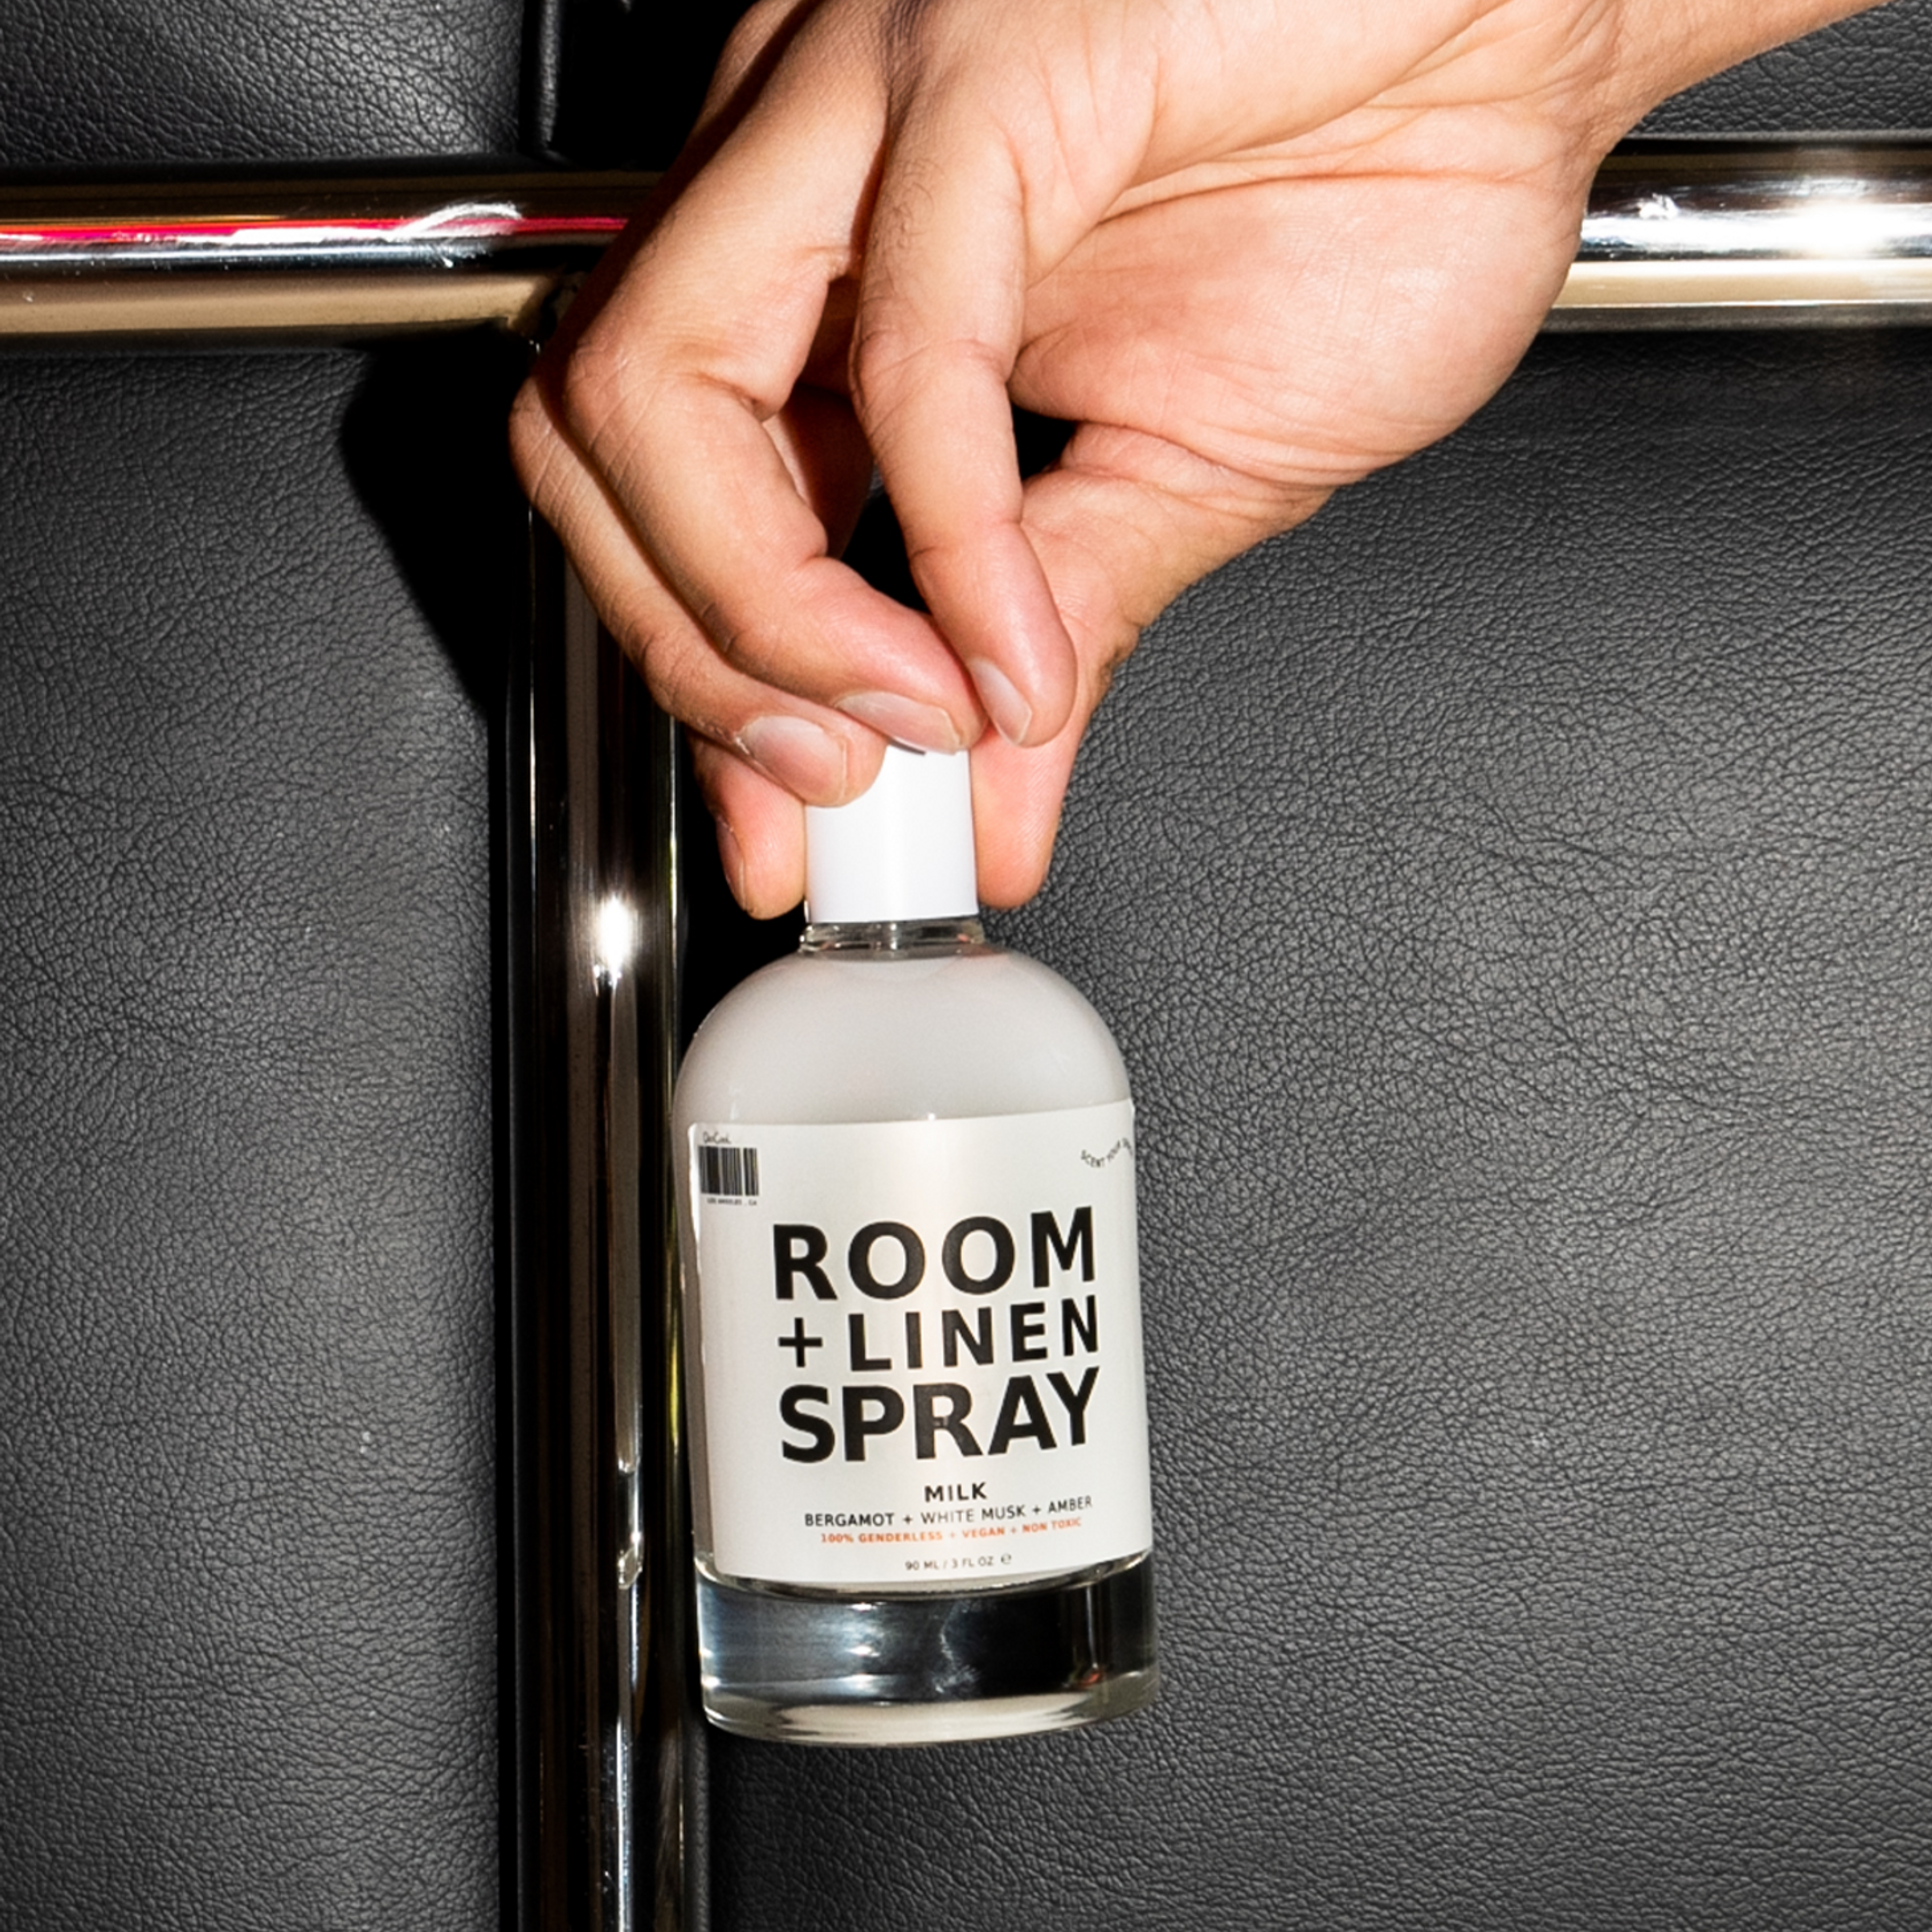 Room + Linen Spray Milk